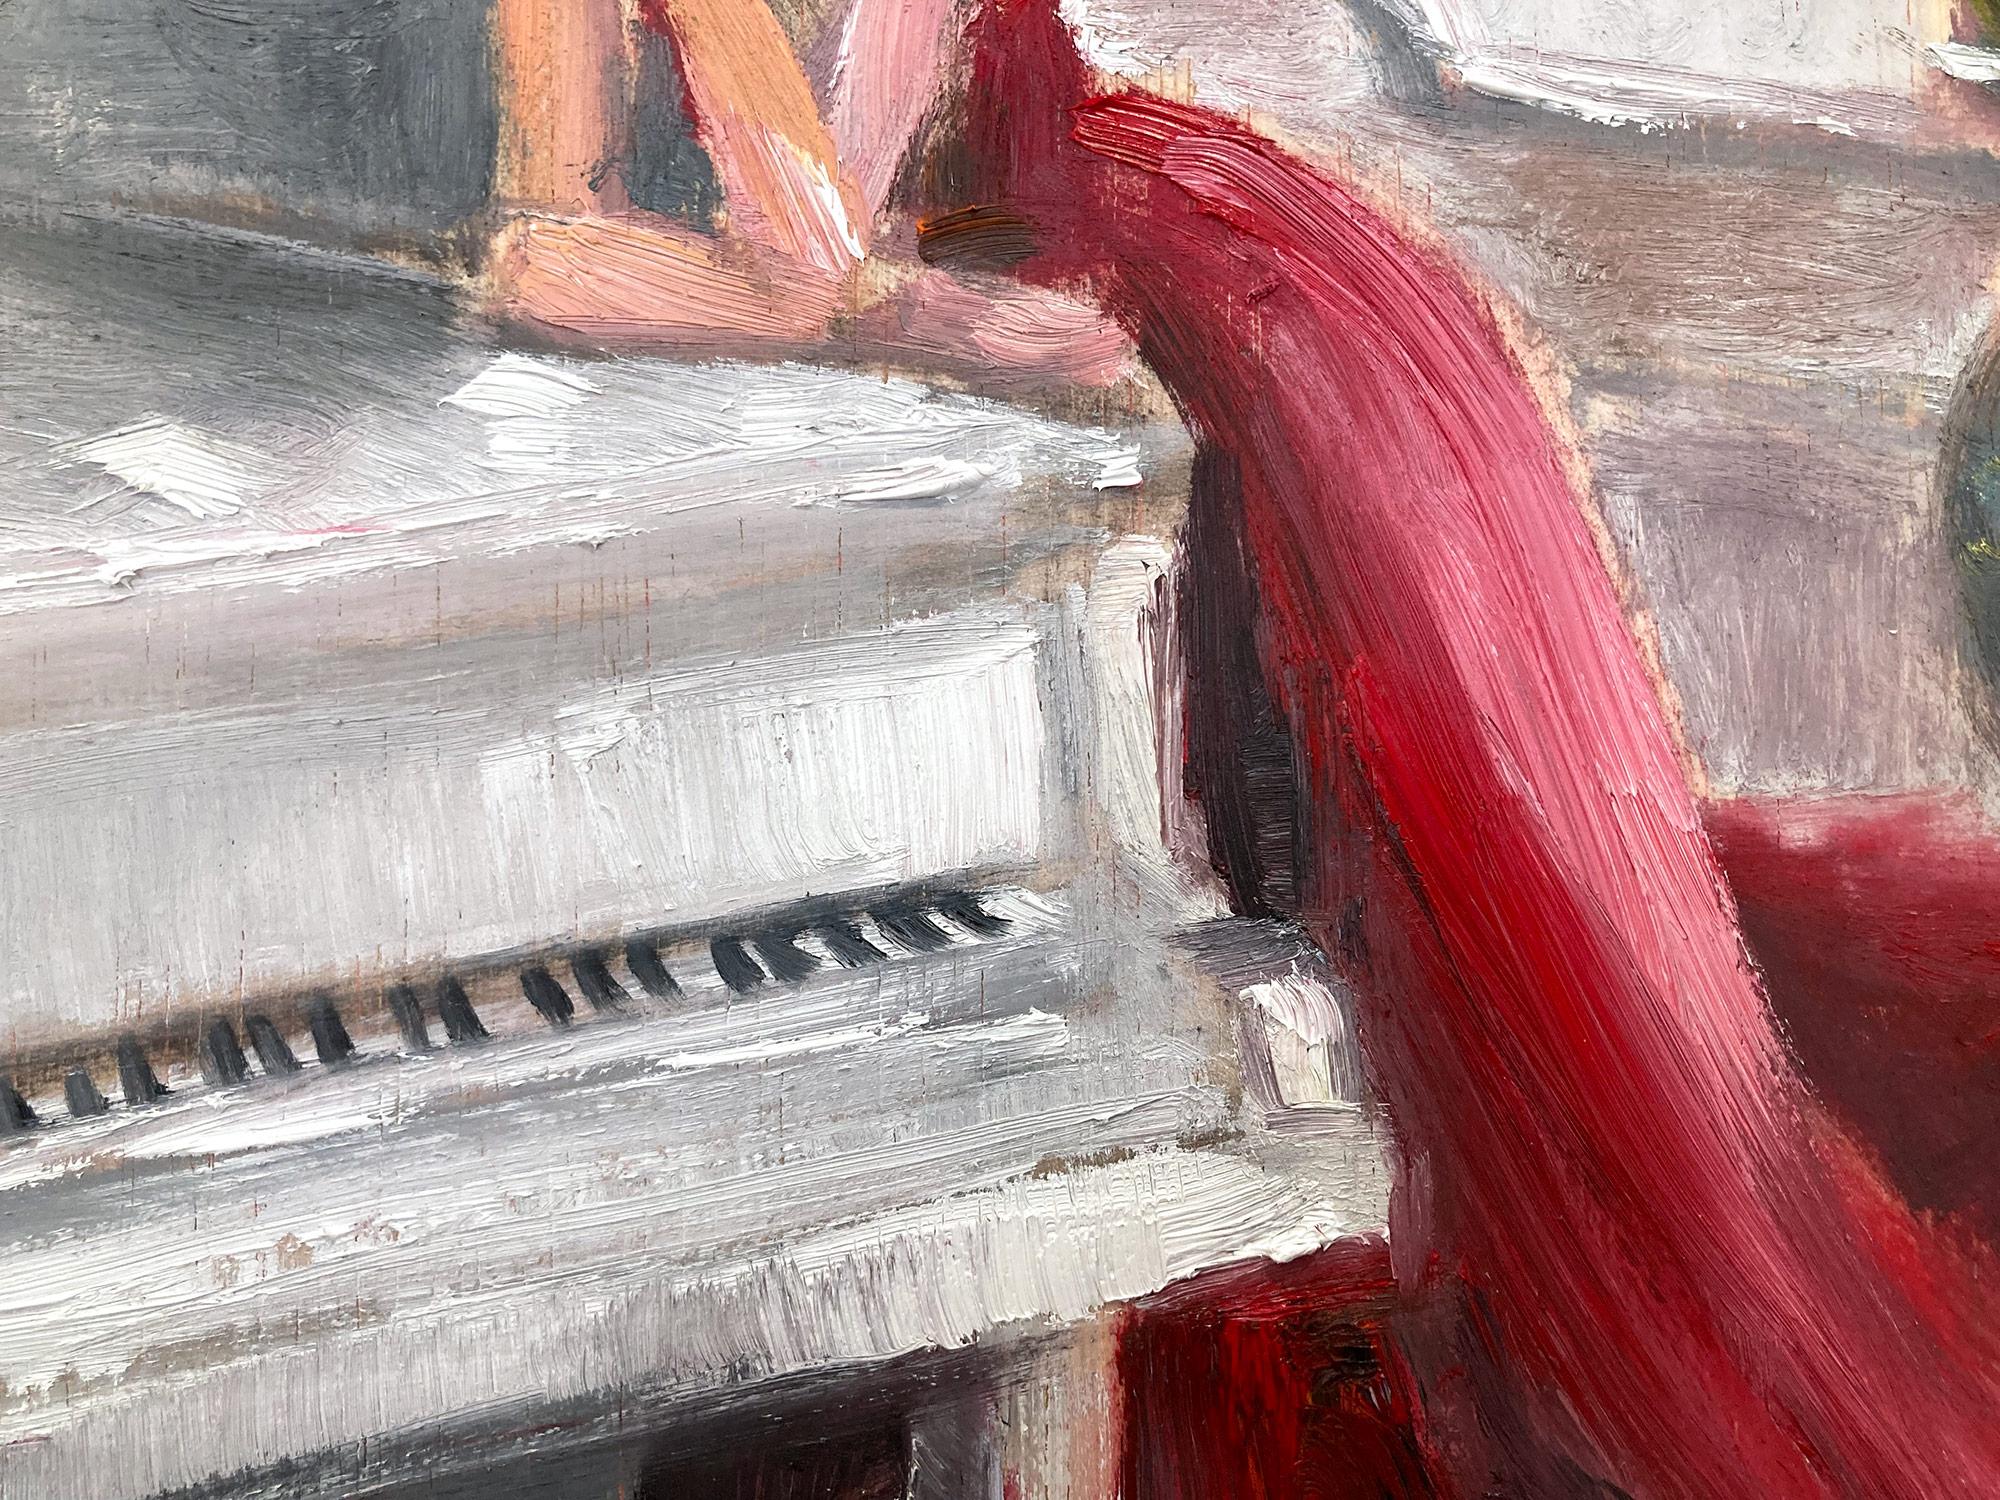 Eine sehr skurrile Darstellung einer Frau in einem roten Kleid, die sich in Gedanken an ein schönes weißes Klavier lehnt. Dieses Stück fängt mühelos die Essenz der Mode und der Haute Couture ein. In einem sehr modernen und impressionistischen Stil